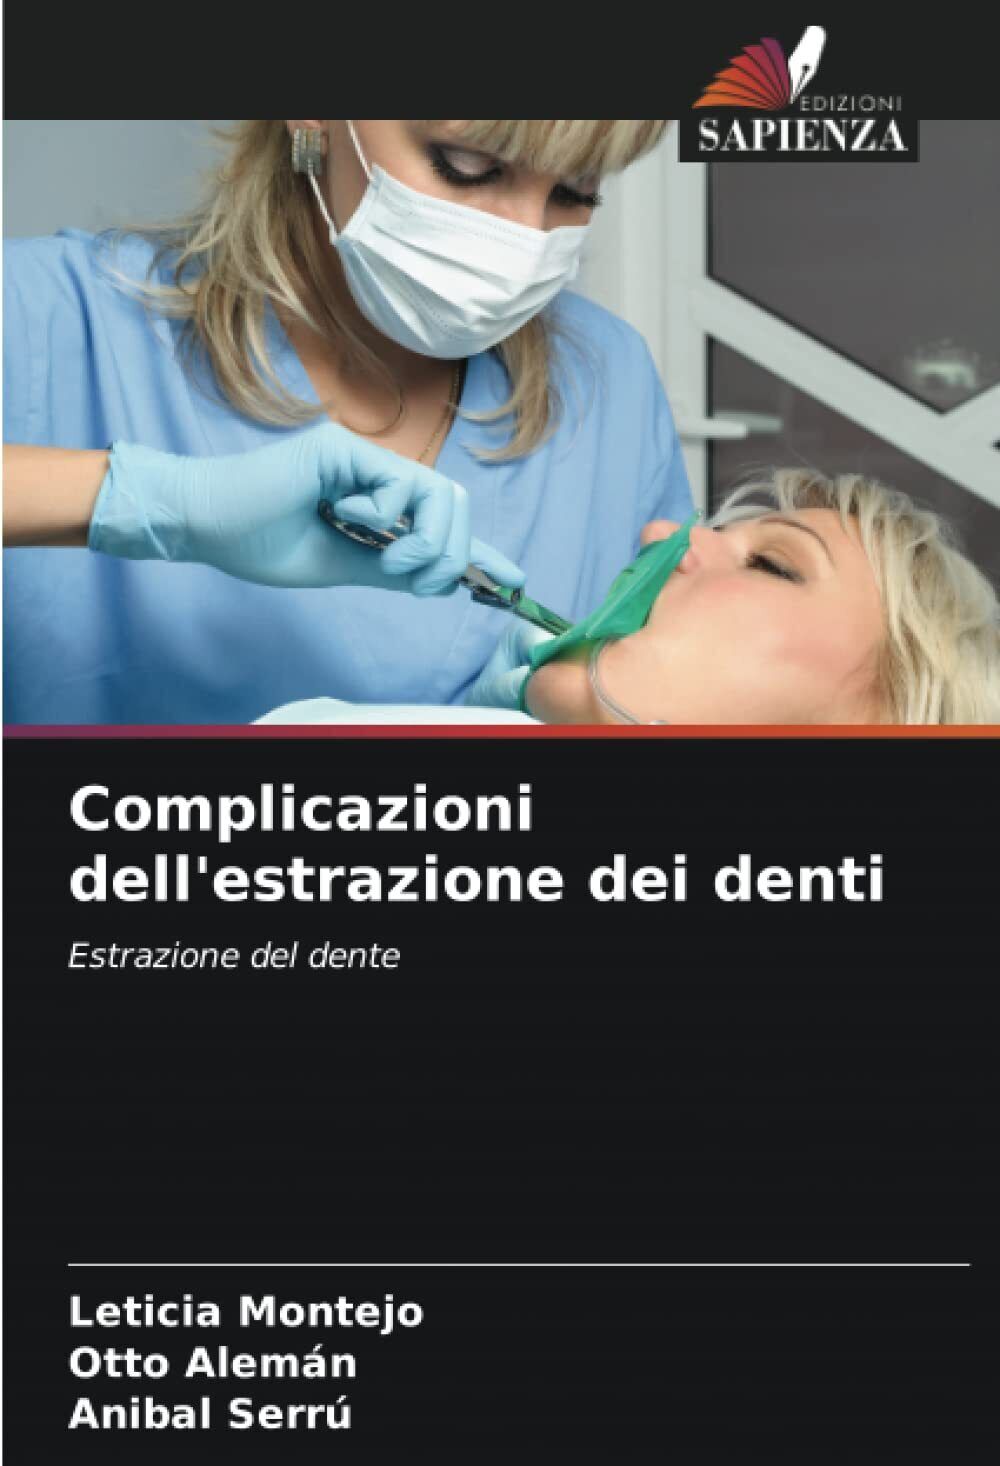 Complicazioni dell'estrazione dei denti - Leticia Montejo - Sapienza, 2022